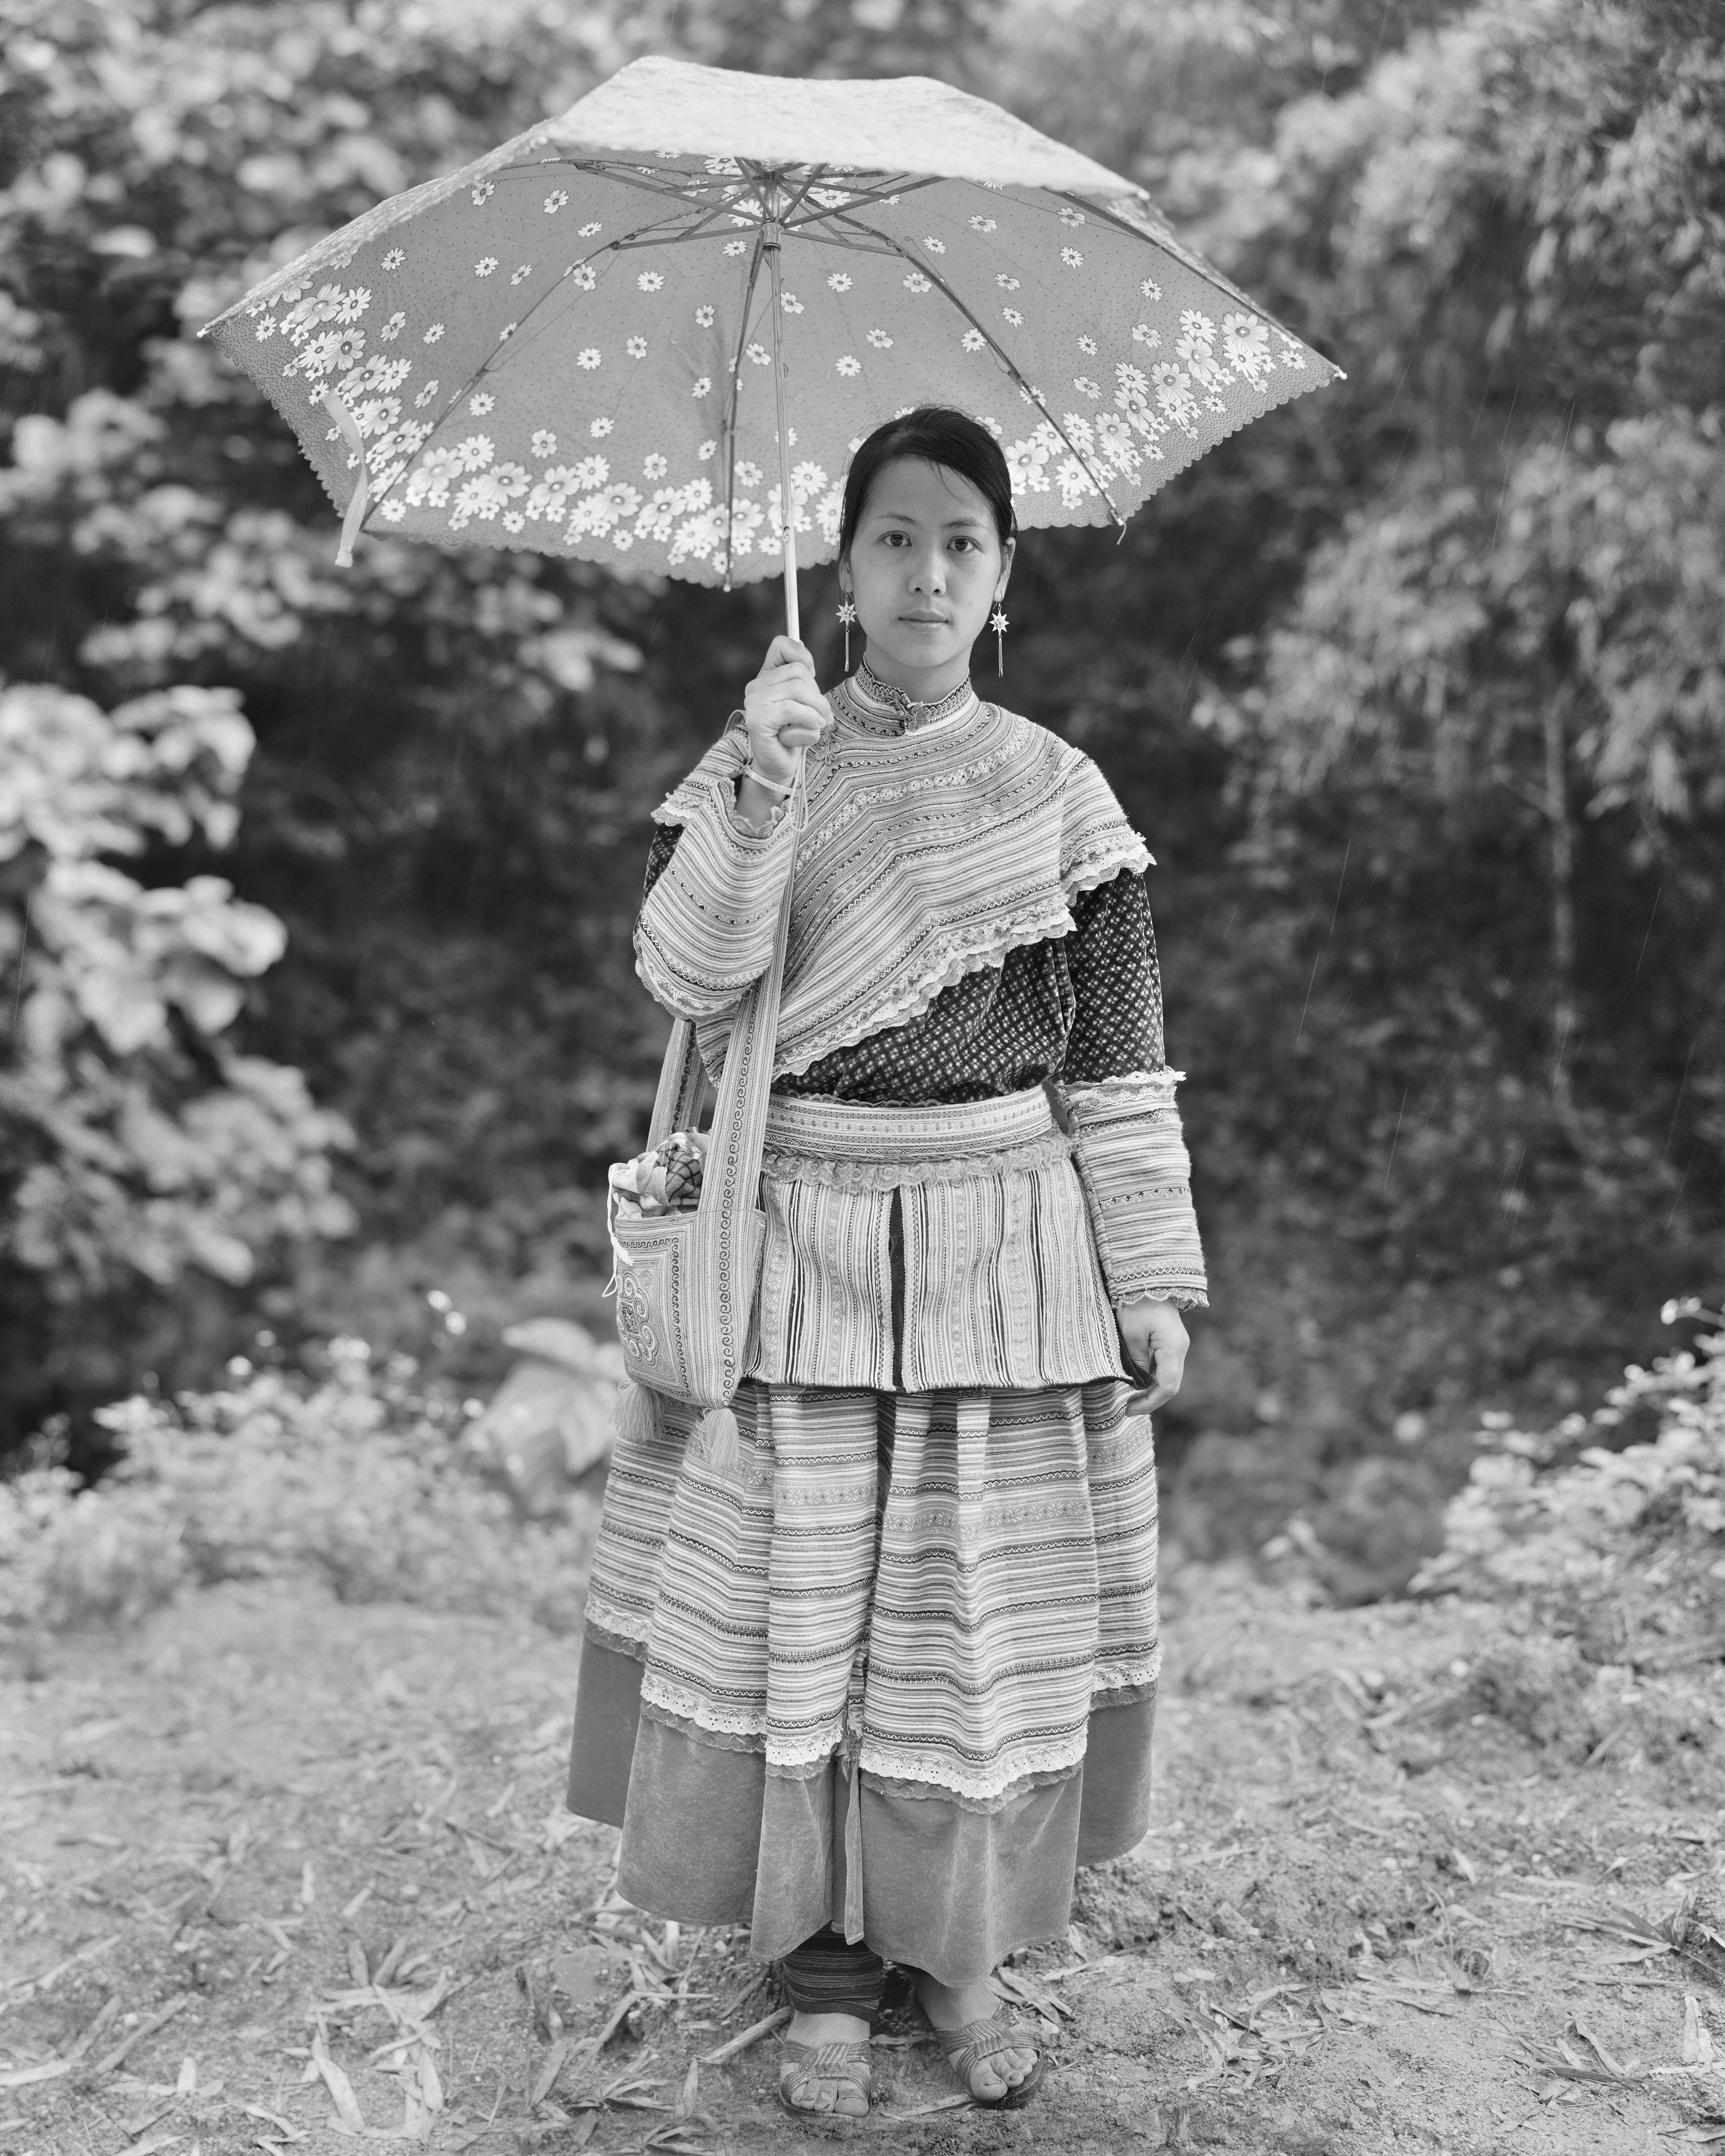 Lao Cai Woman with Umbrella in the Rain